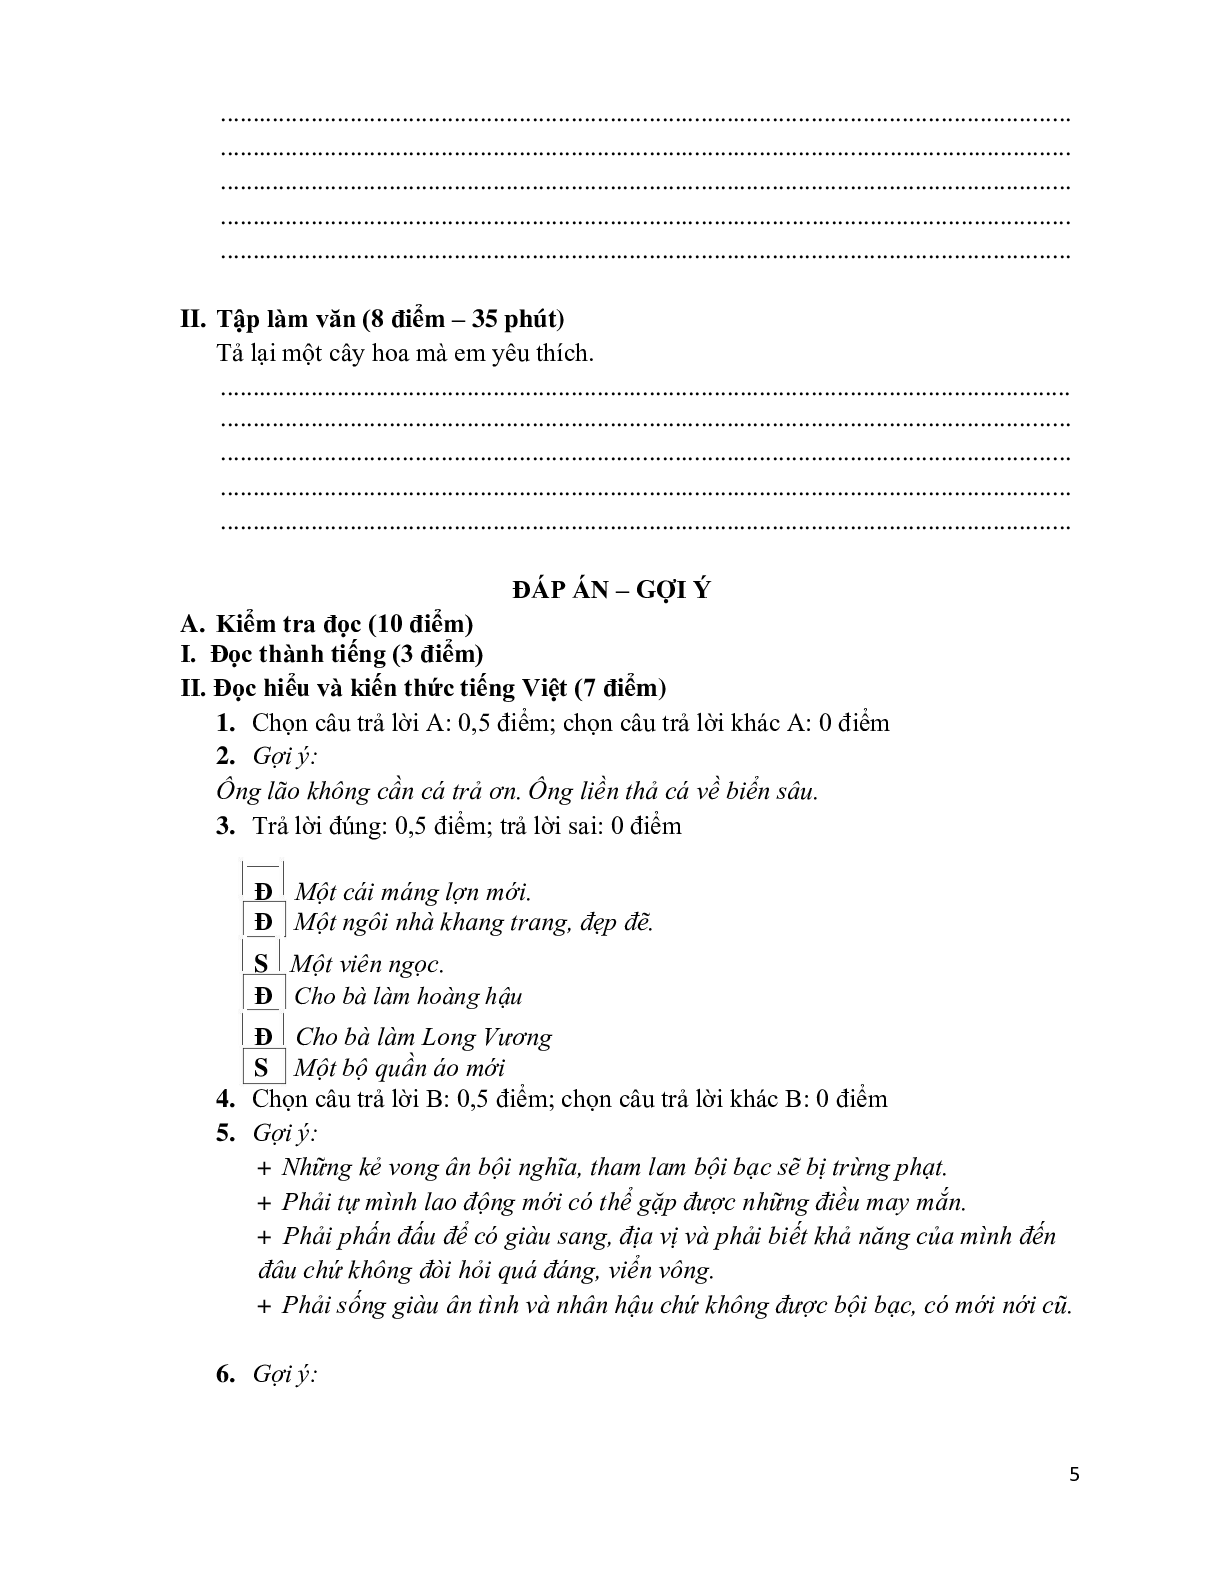 Đề kiểm tra cuối học kỳ 2 môn Tiếng Việt  lớp 4 (trang 5)